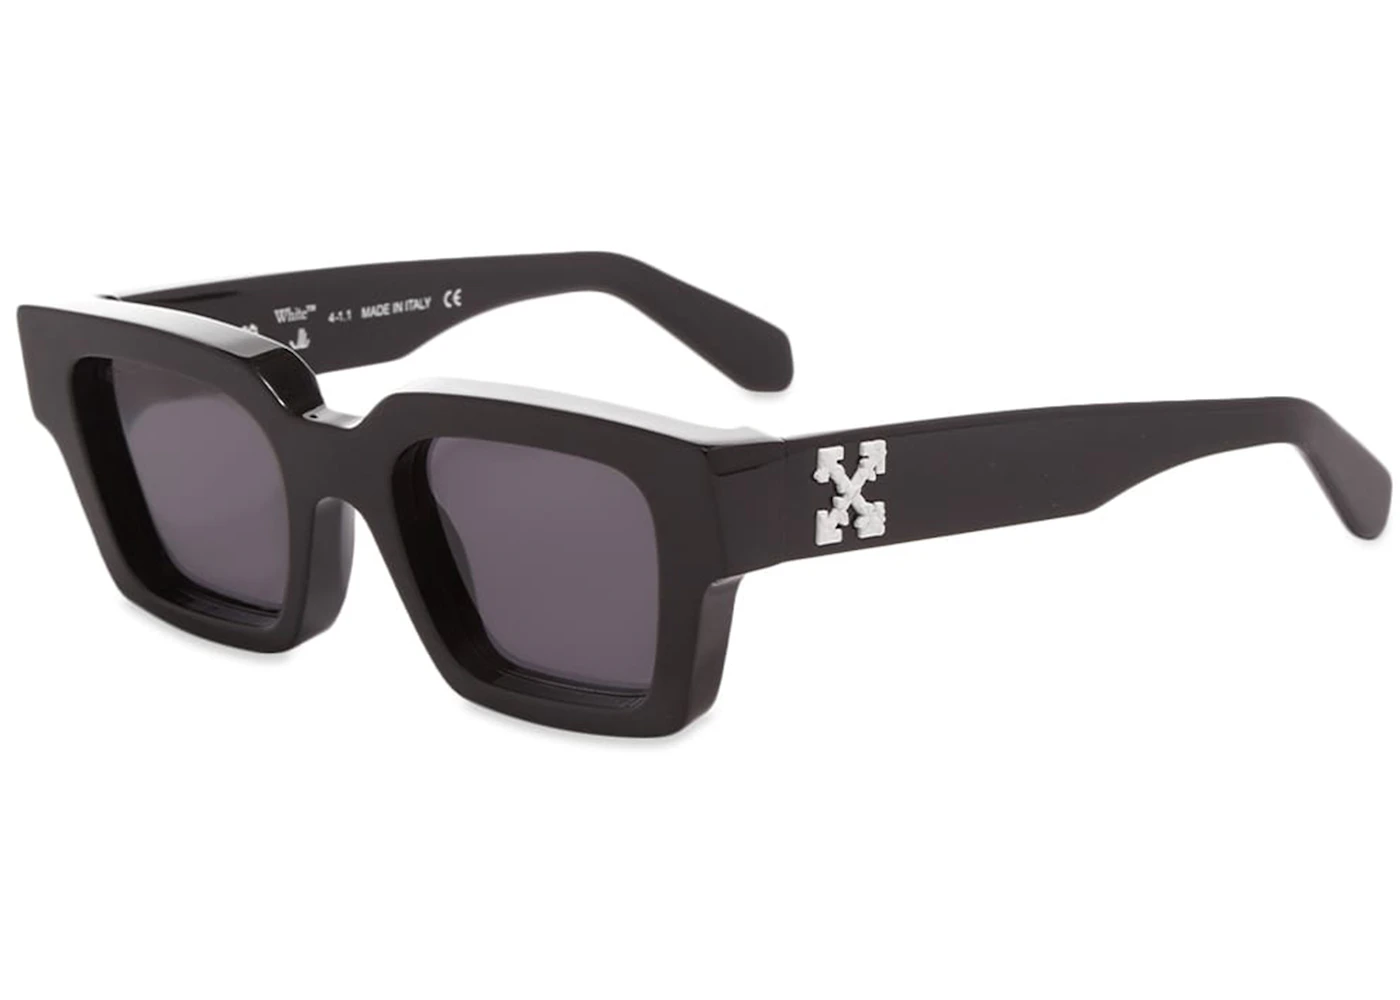 Off-White Virgil Square Frame Sunglasses Black White Grey (FW21)